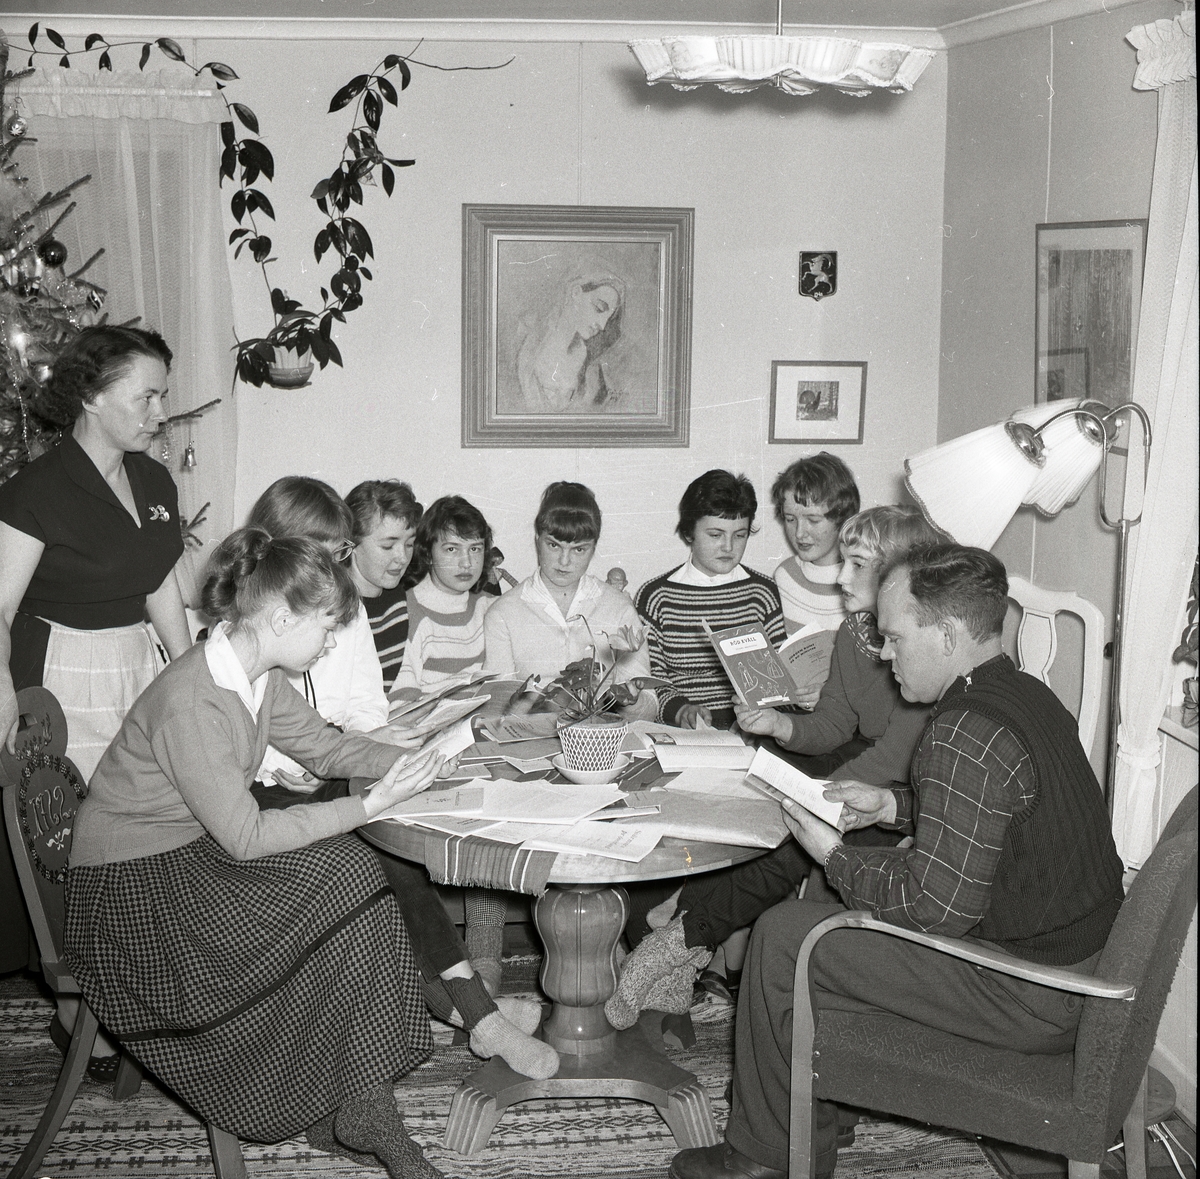 En grupp vuxna och ungdomar deltar i en studiecirkel hemma hos Hilding och Adéle, 19 januari 1958.